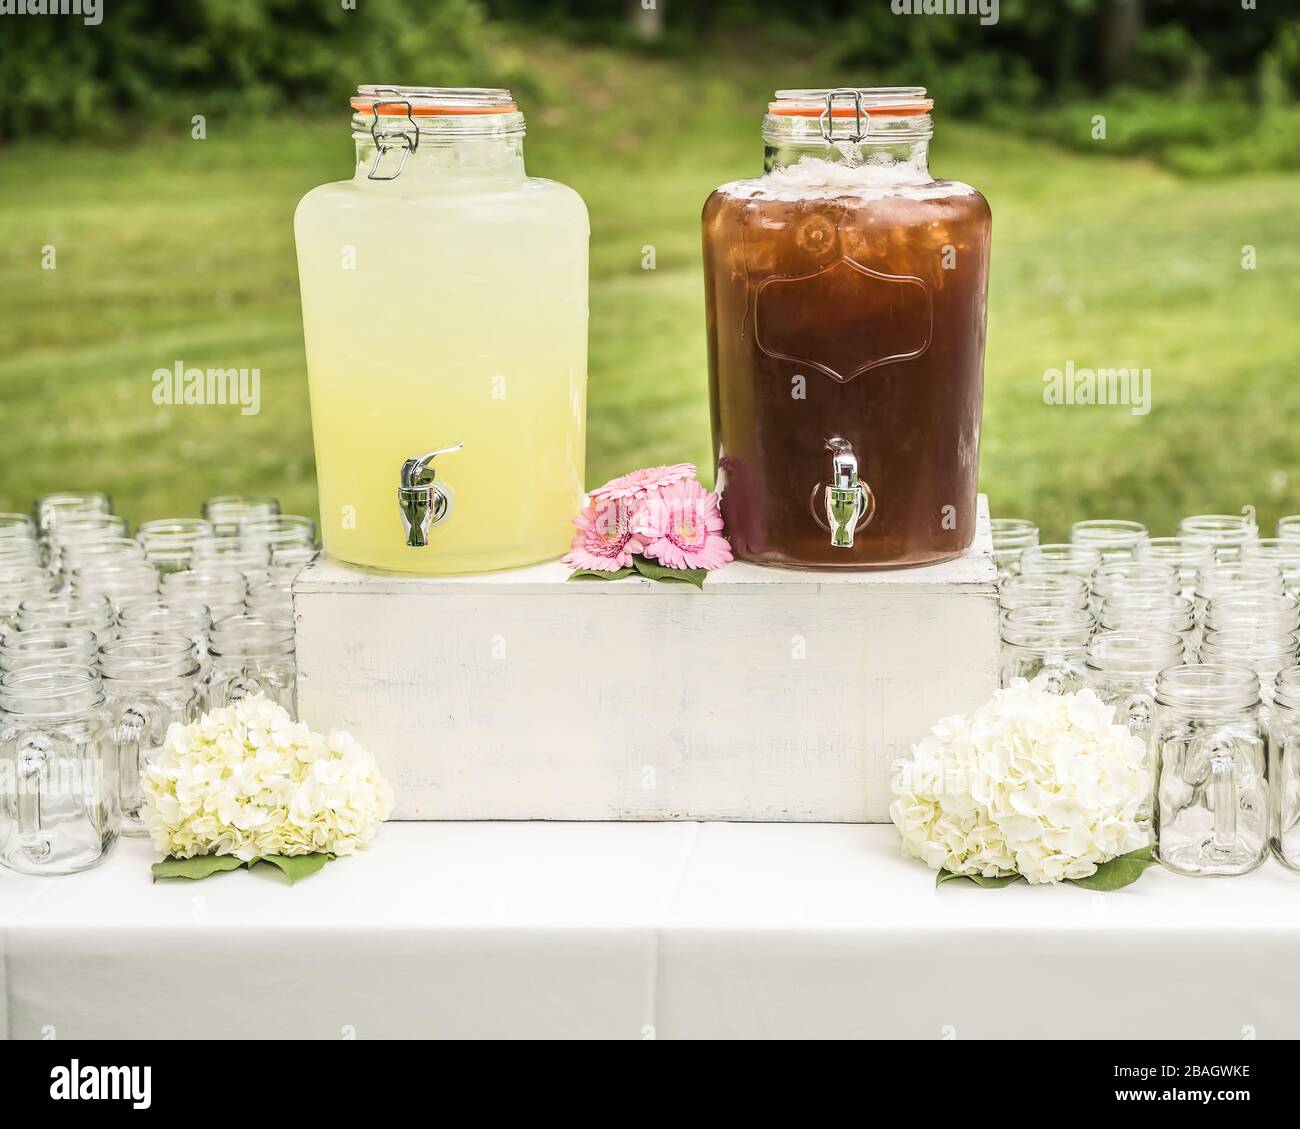 Buvez une table avec de la limonade, du thé glacé, des verres et des fleurs sur une table chic et habyante lors d'un événement extérieur élégant dans la campagne. Banque D'Images